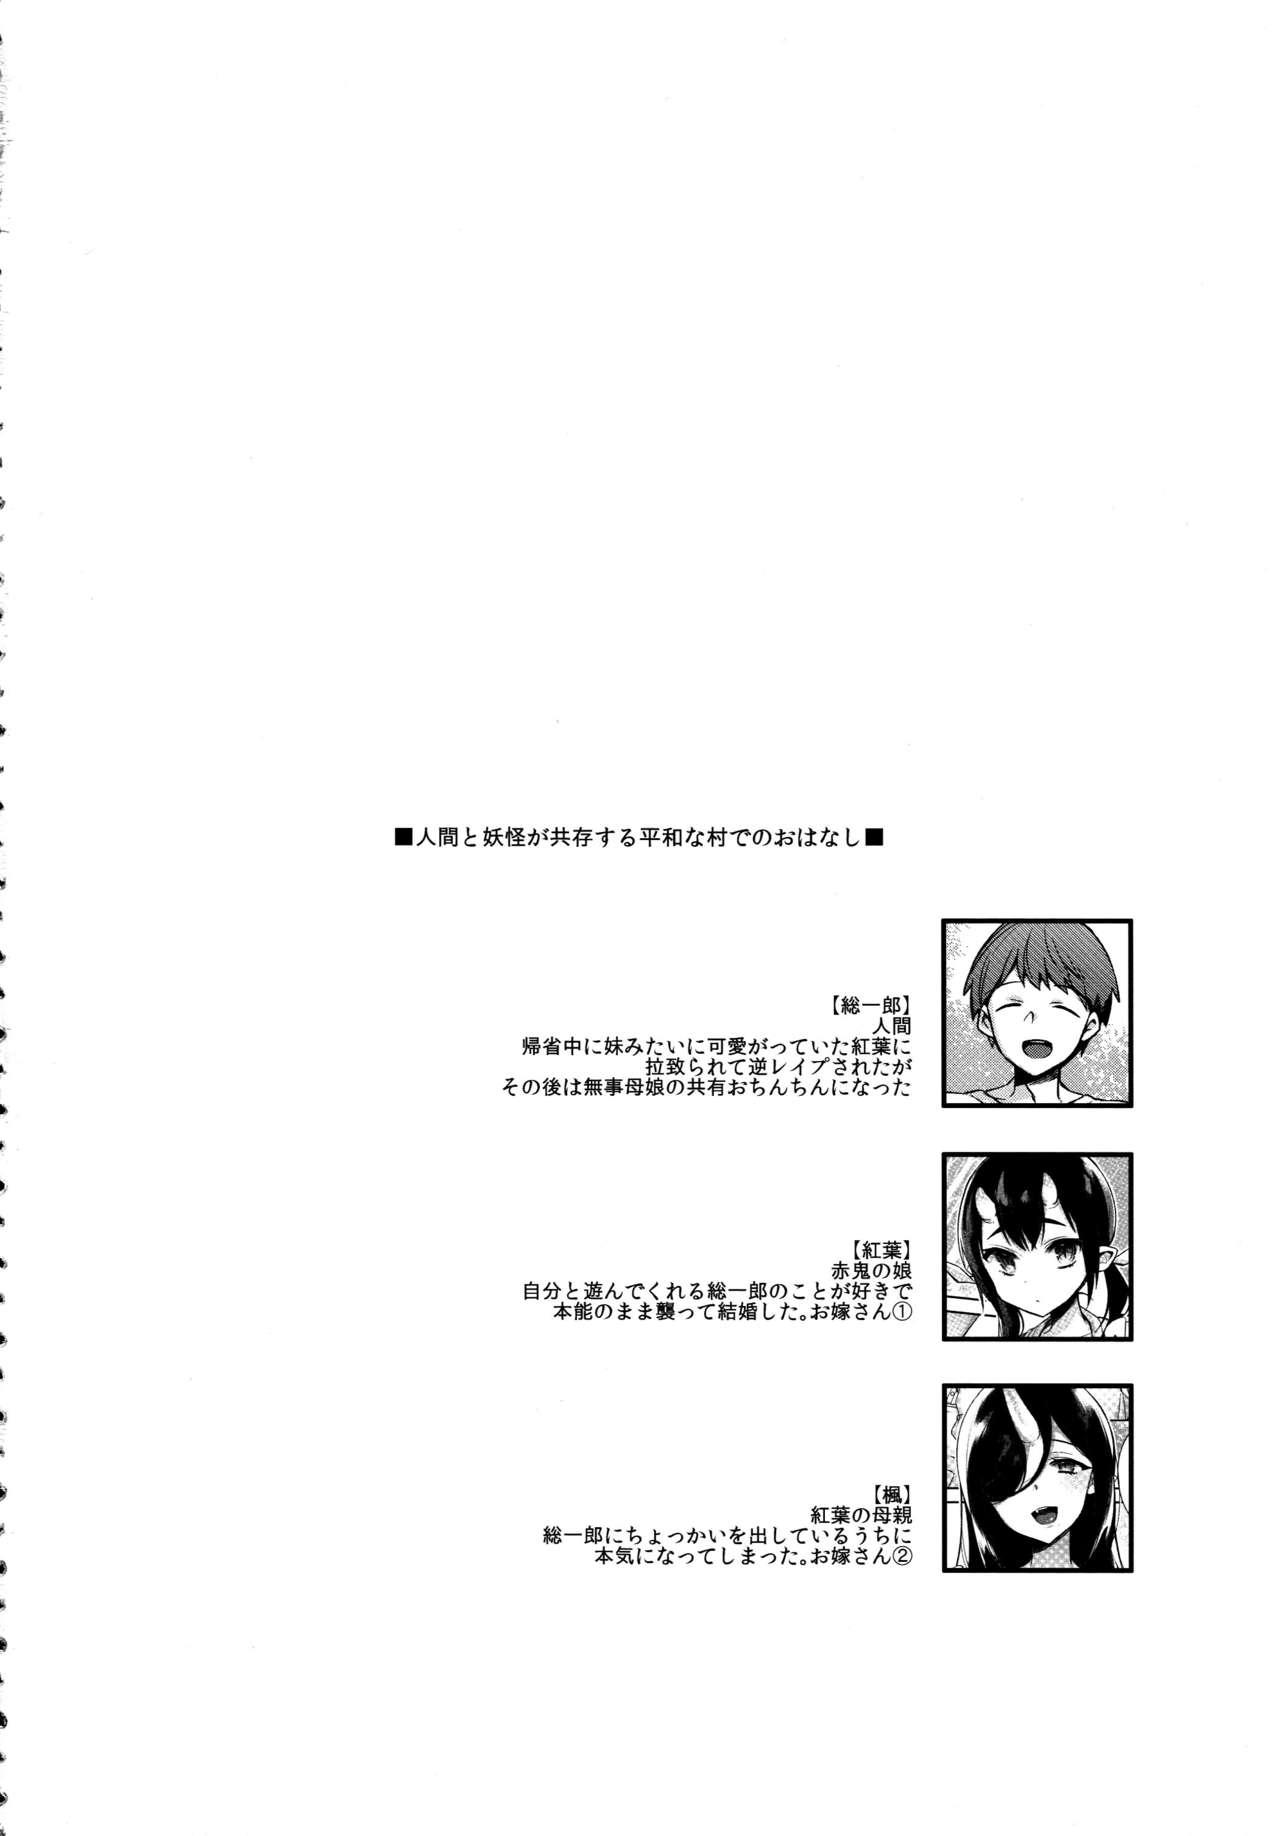 Futa Oni no Shimai wa Hito no Osu to Kozukuri ga Shitai - Original Atm - Page 5